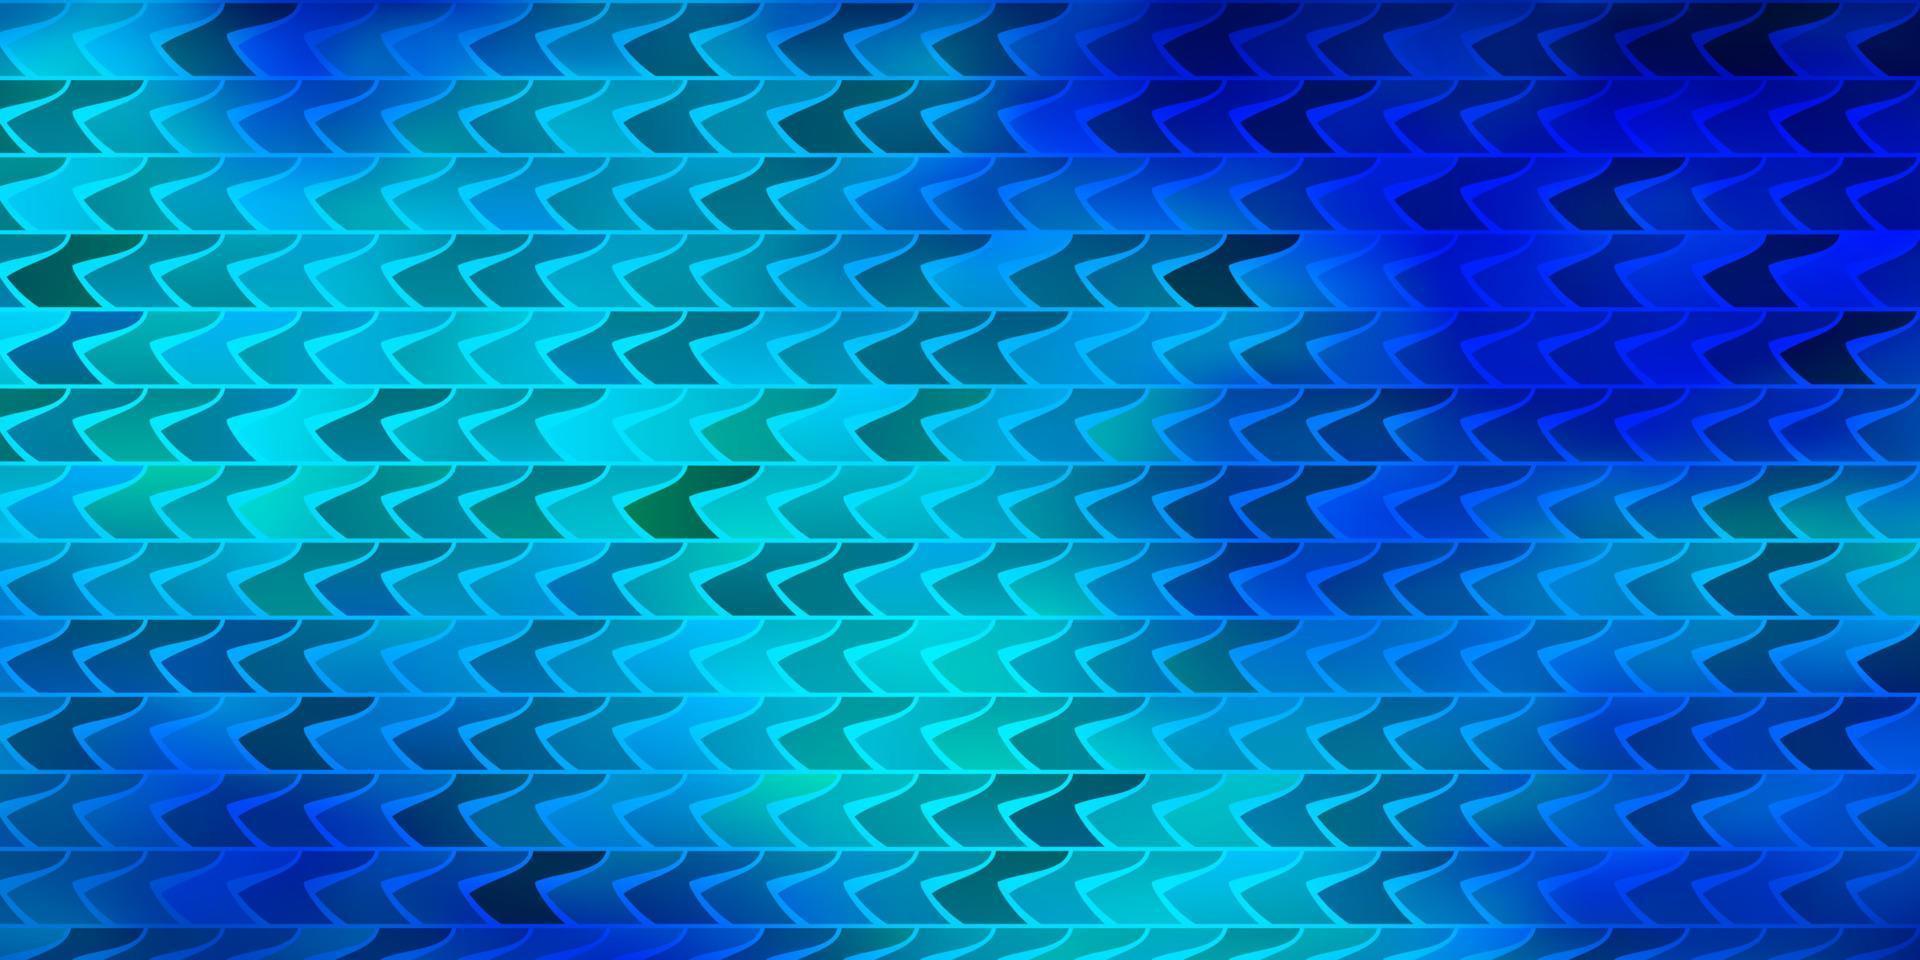 plantilla de vector azul oscuro con rectángulos.